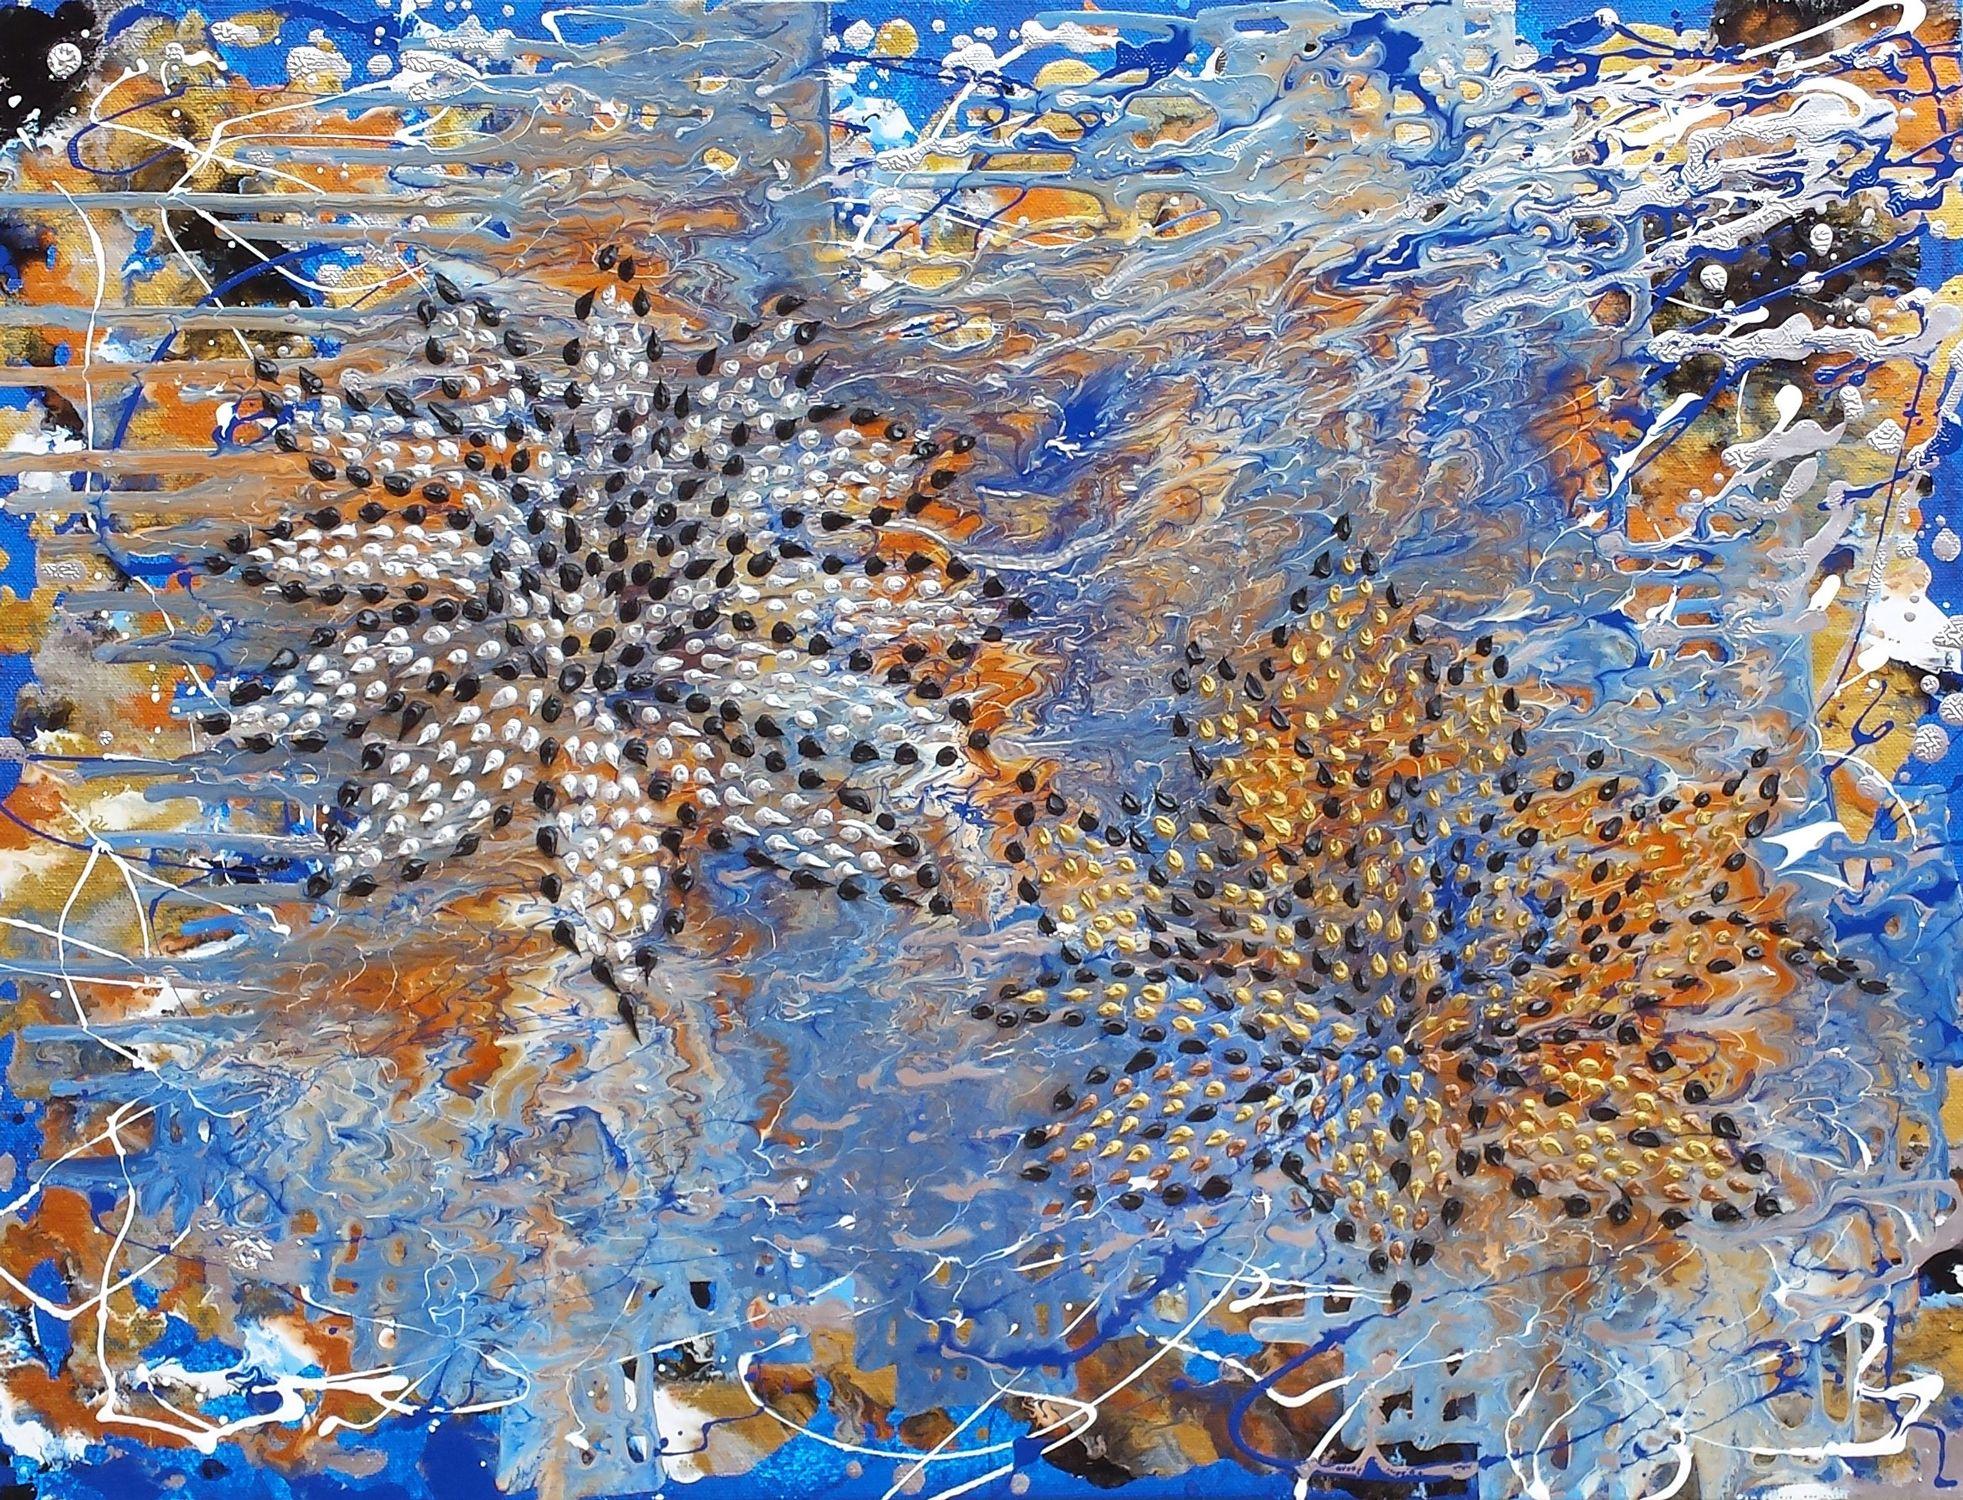 Water Lilies, Mixed Media on Canvas - Mixed Media Art by Alexandra Romano